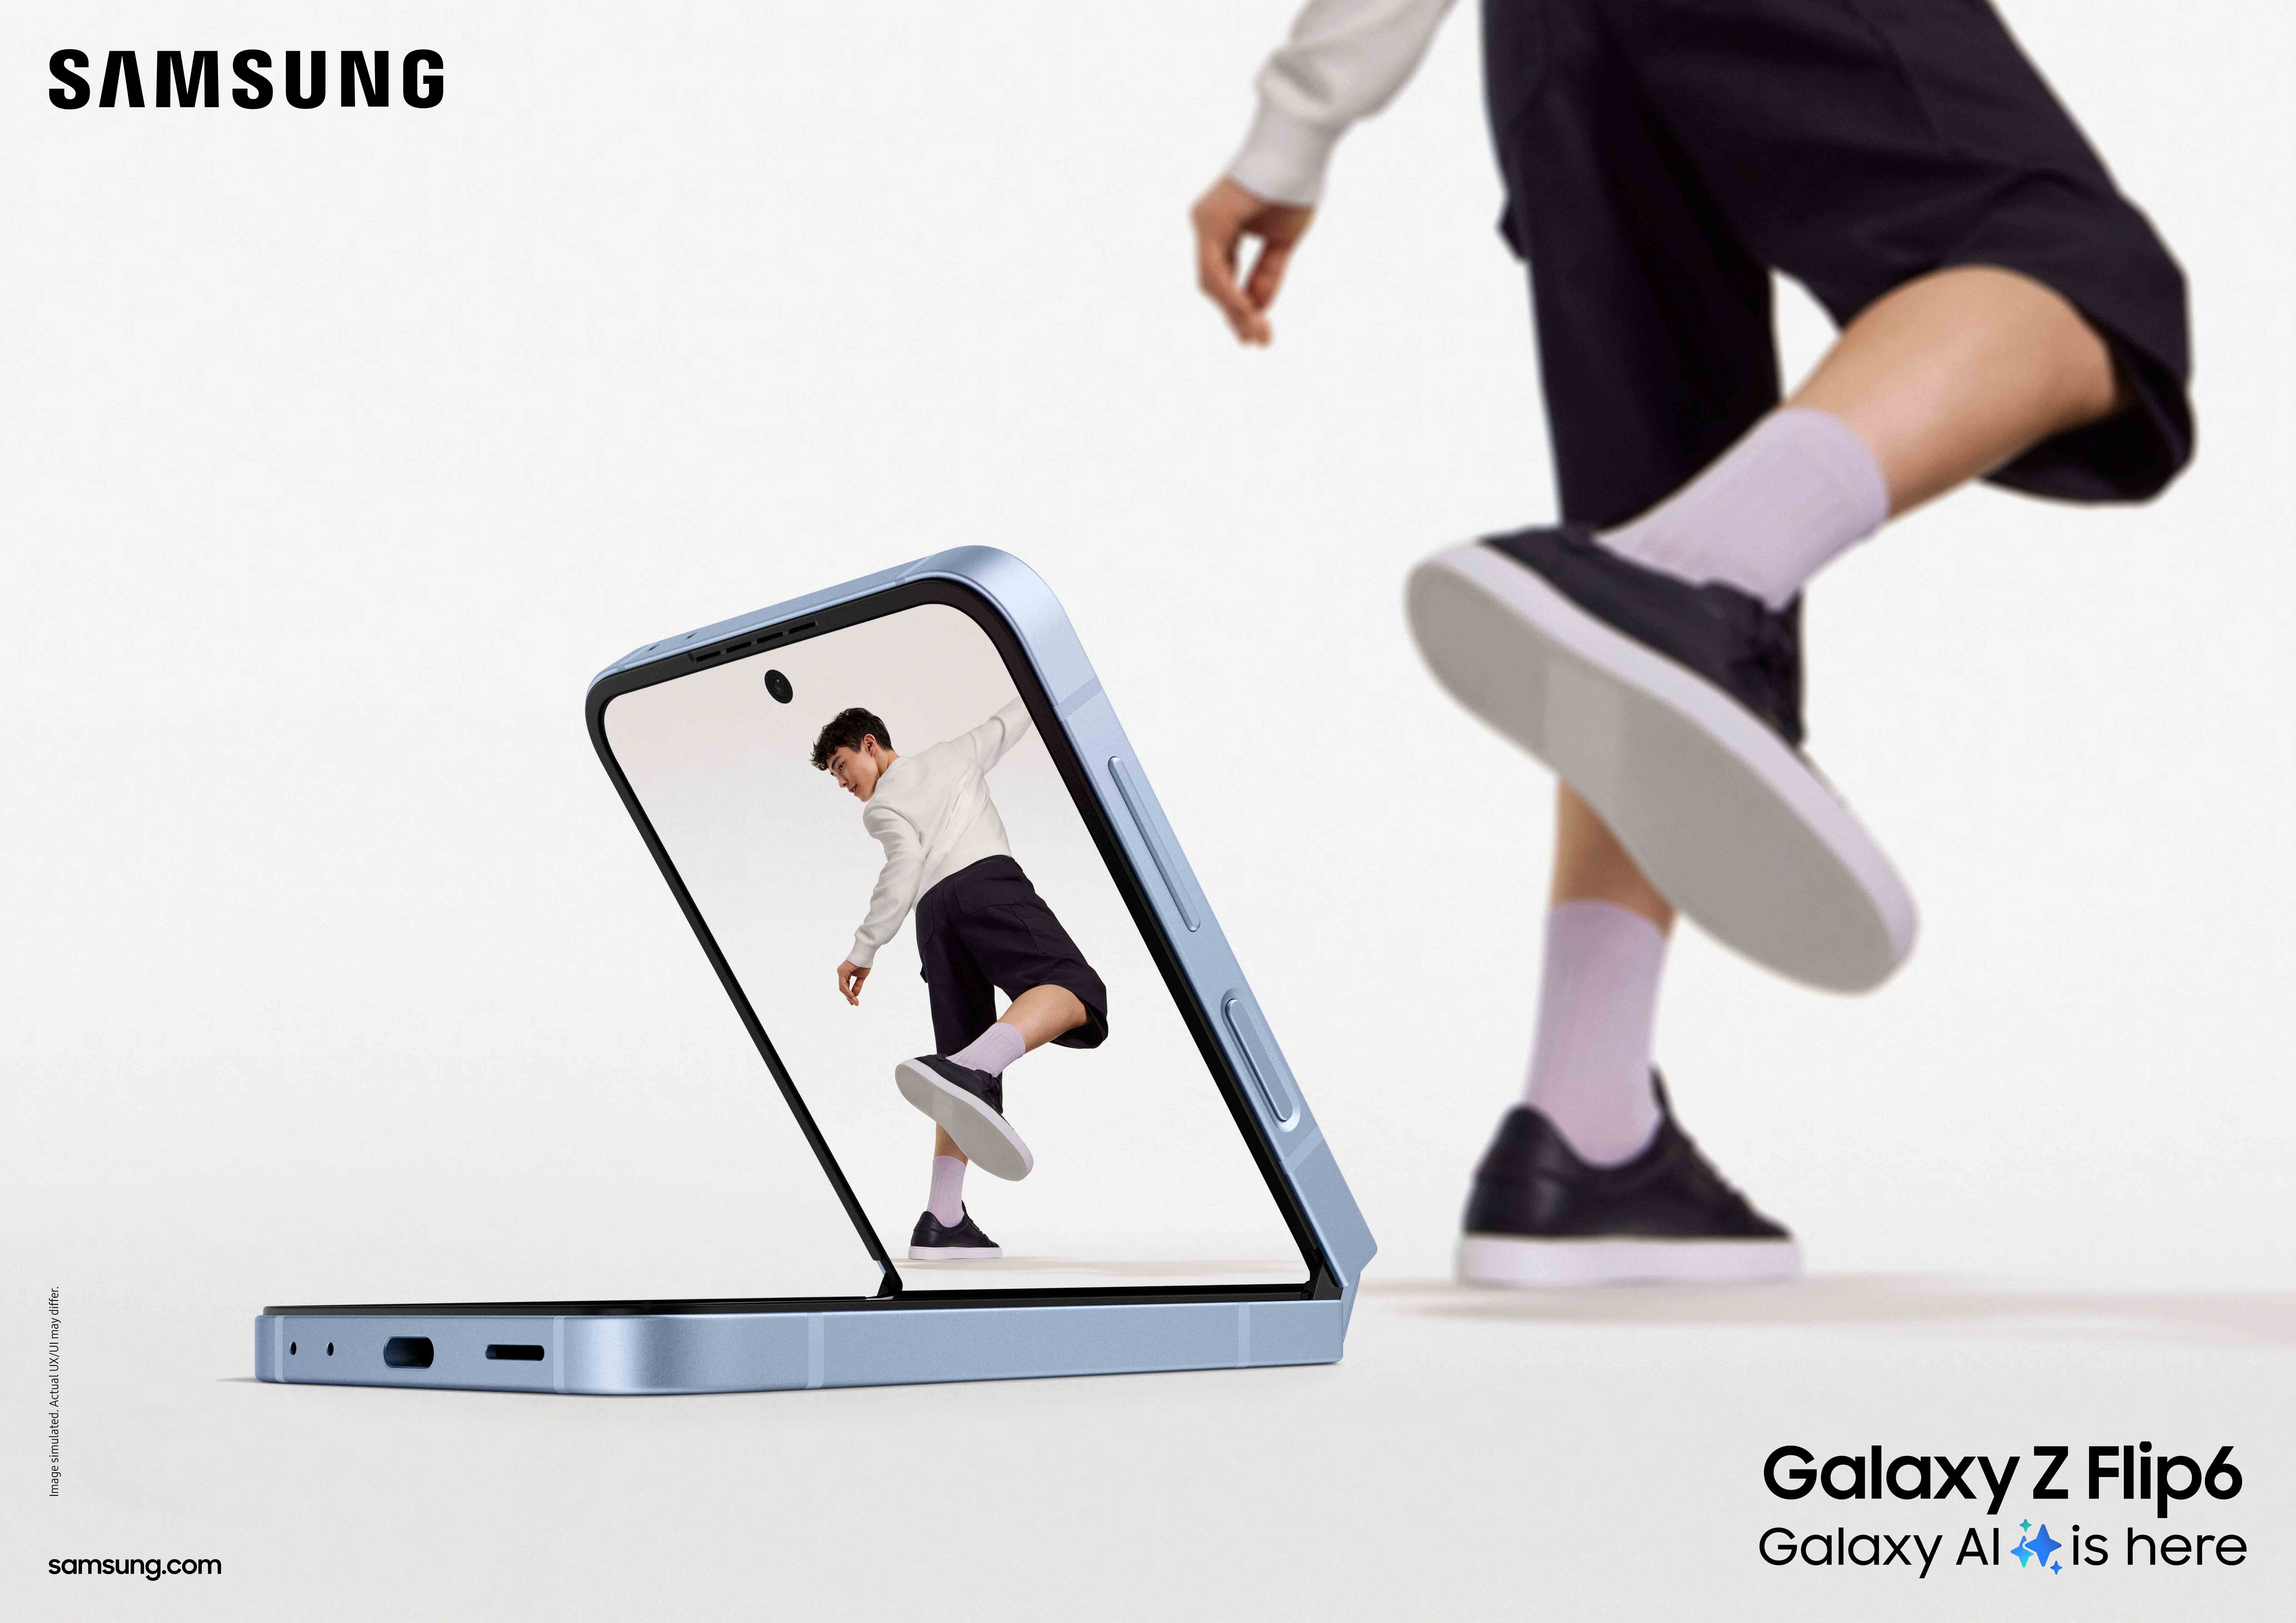 Samsung Galaxy Z Flip6: Menginspirasi Gen Z dengan Inovasi Teknologi   